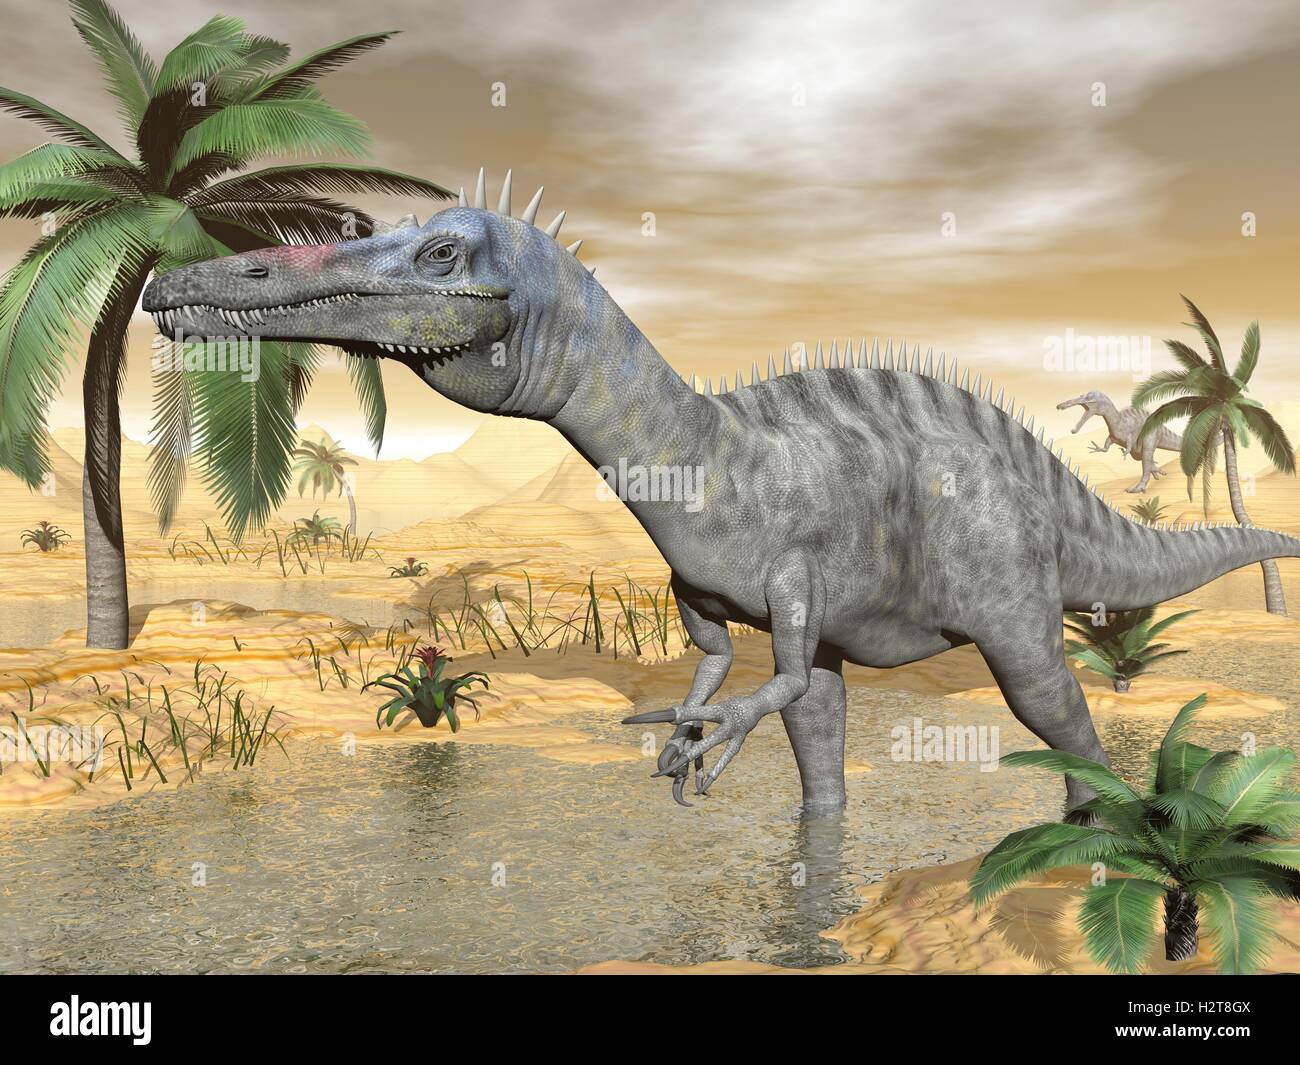 Suchomimus dinosaurs in desert - 3D render Stock Photo